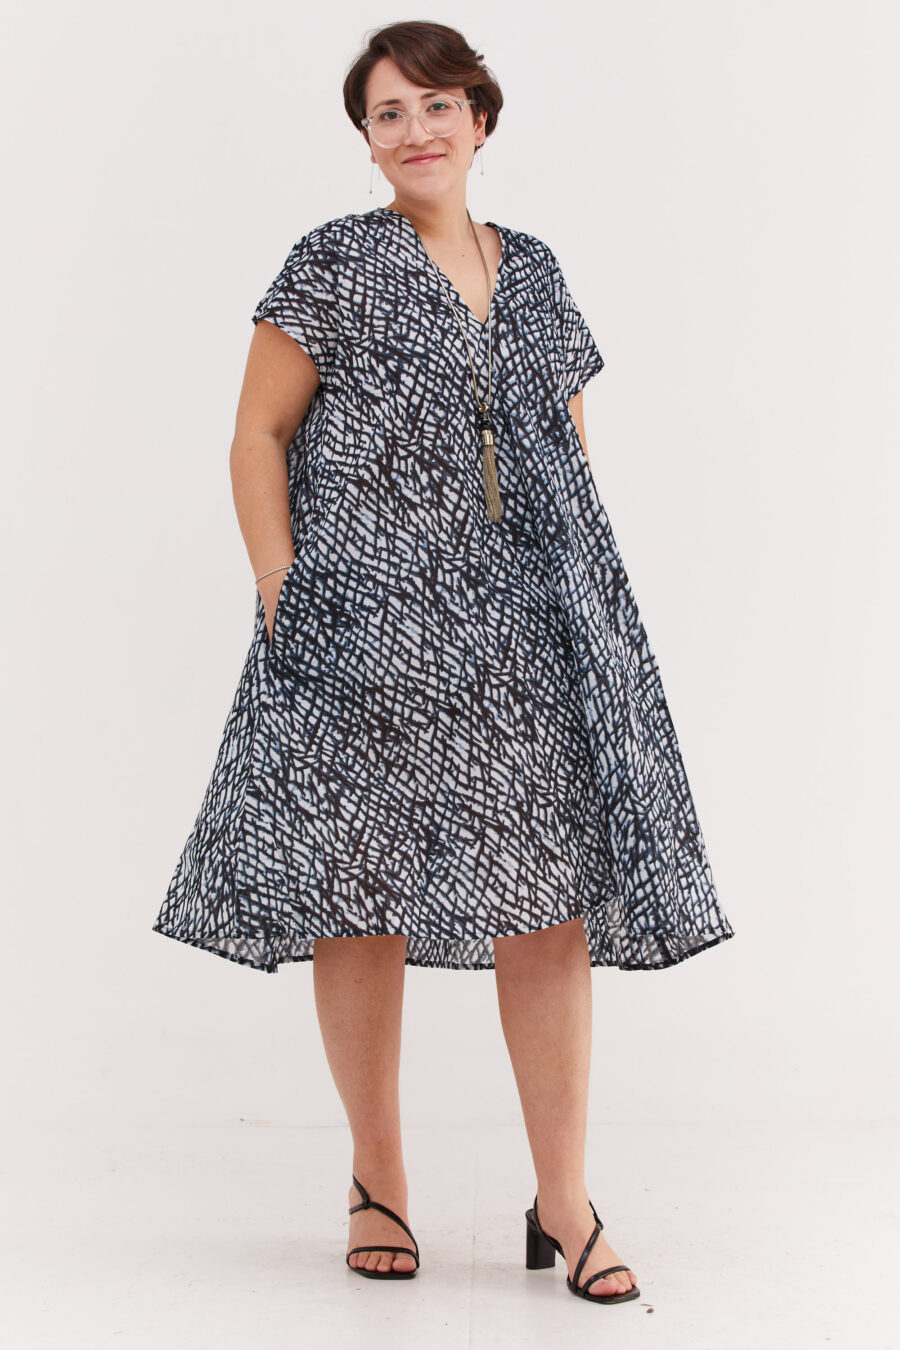 שמלת ג'וז | שמלת אוברסייז באורך מידי בעיצוב ייחודי - הדפס בלאק קראש, שמלה בצבע לבן עם הדפס דמוי רשת בגוונים שחור ותכלת